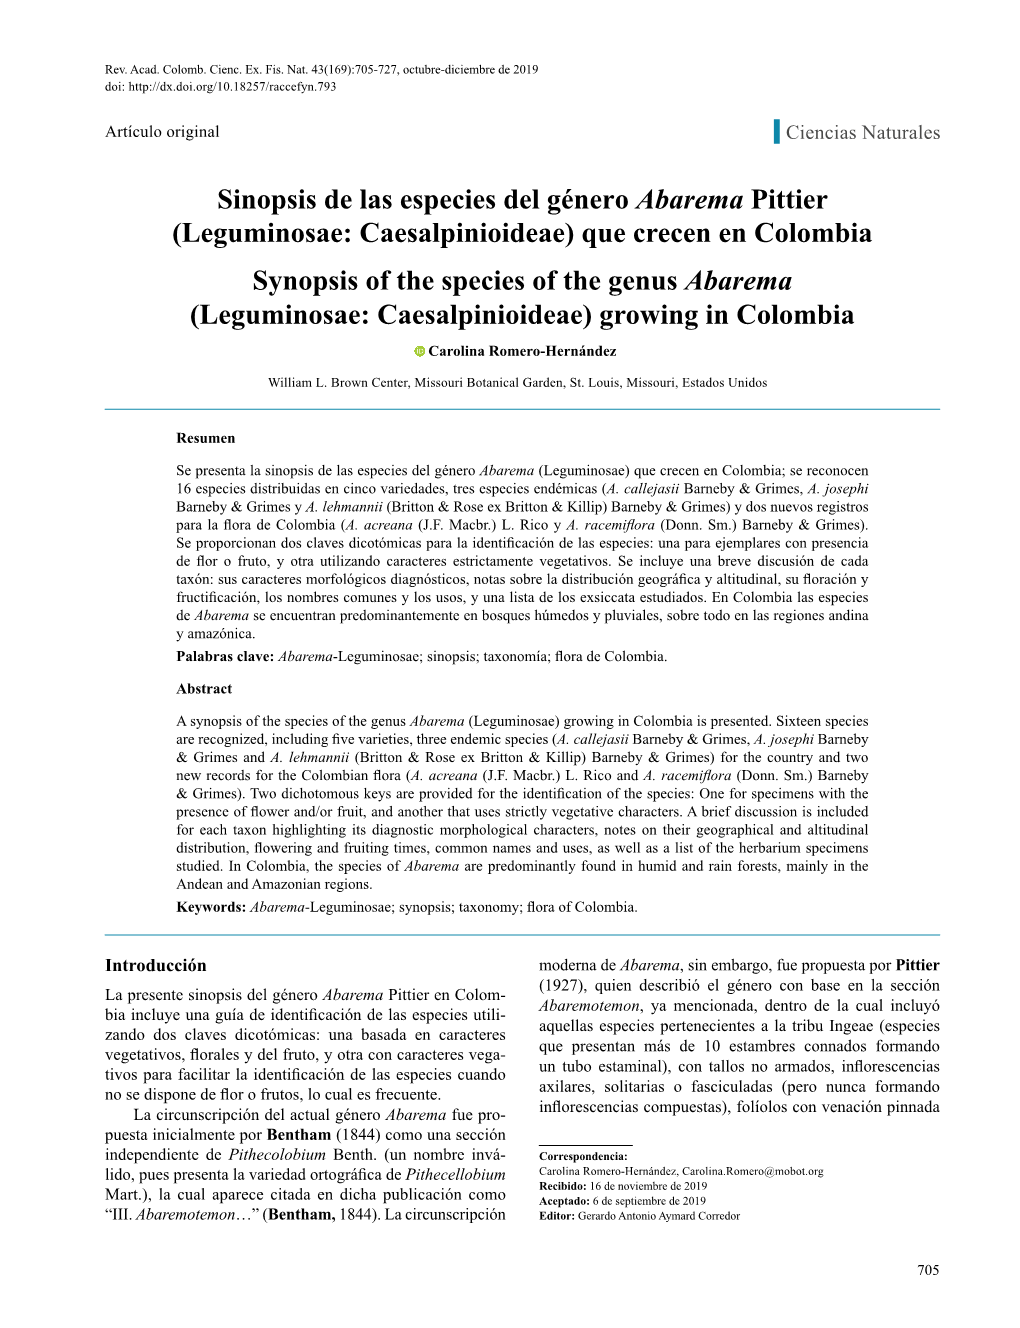 Sinopsis De Las Especies Del Género Abarema Pittier (Leguminosae: Caesalpinioideae) Que Crecen En Colombia Synopsis of the Spec